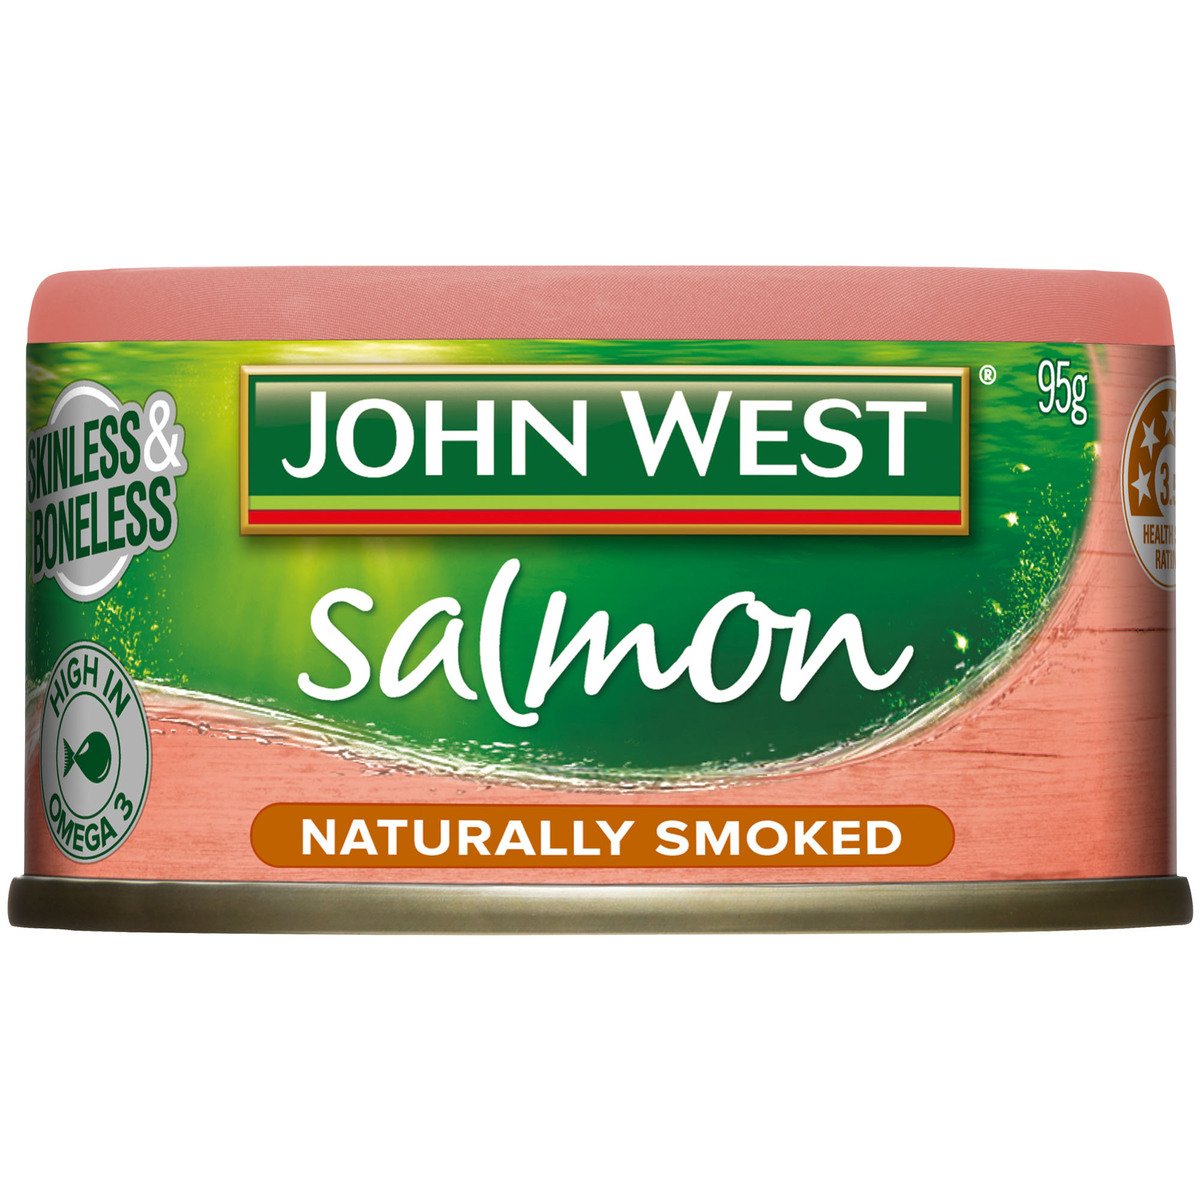 جون ويست سلمون مدخن طبيعيا 95 جم